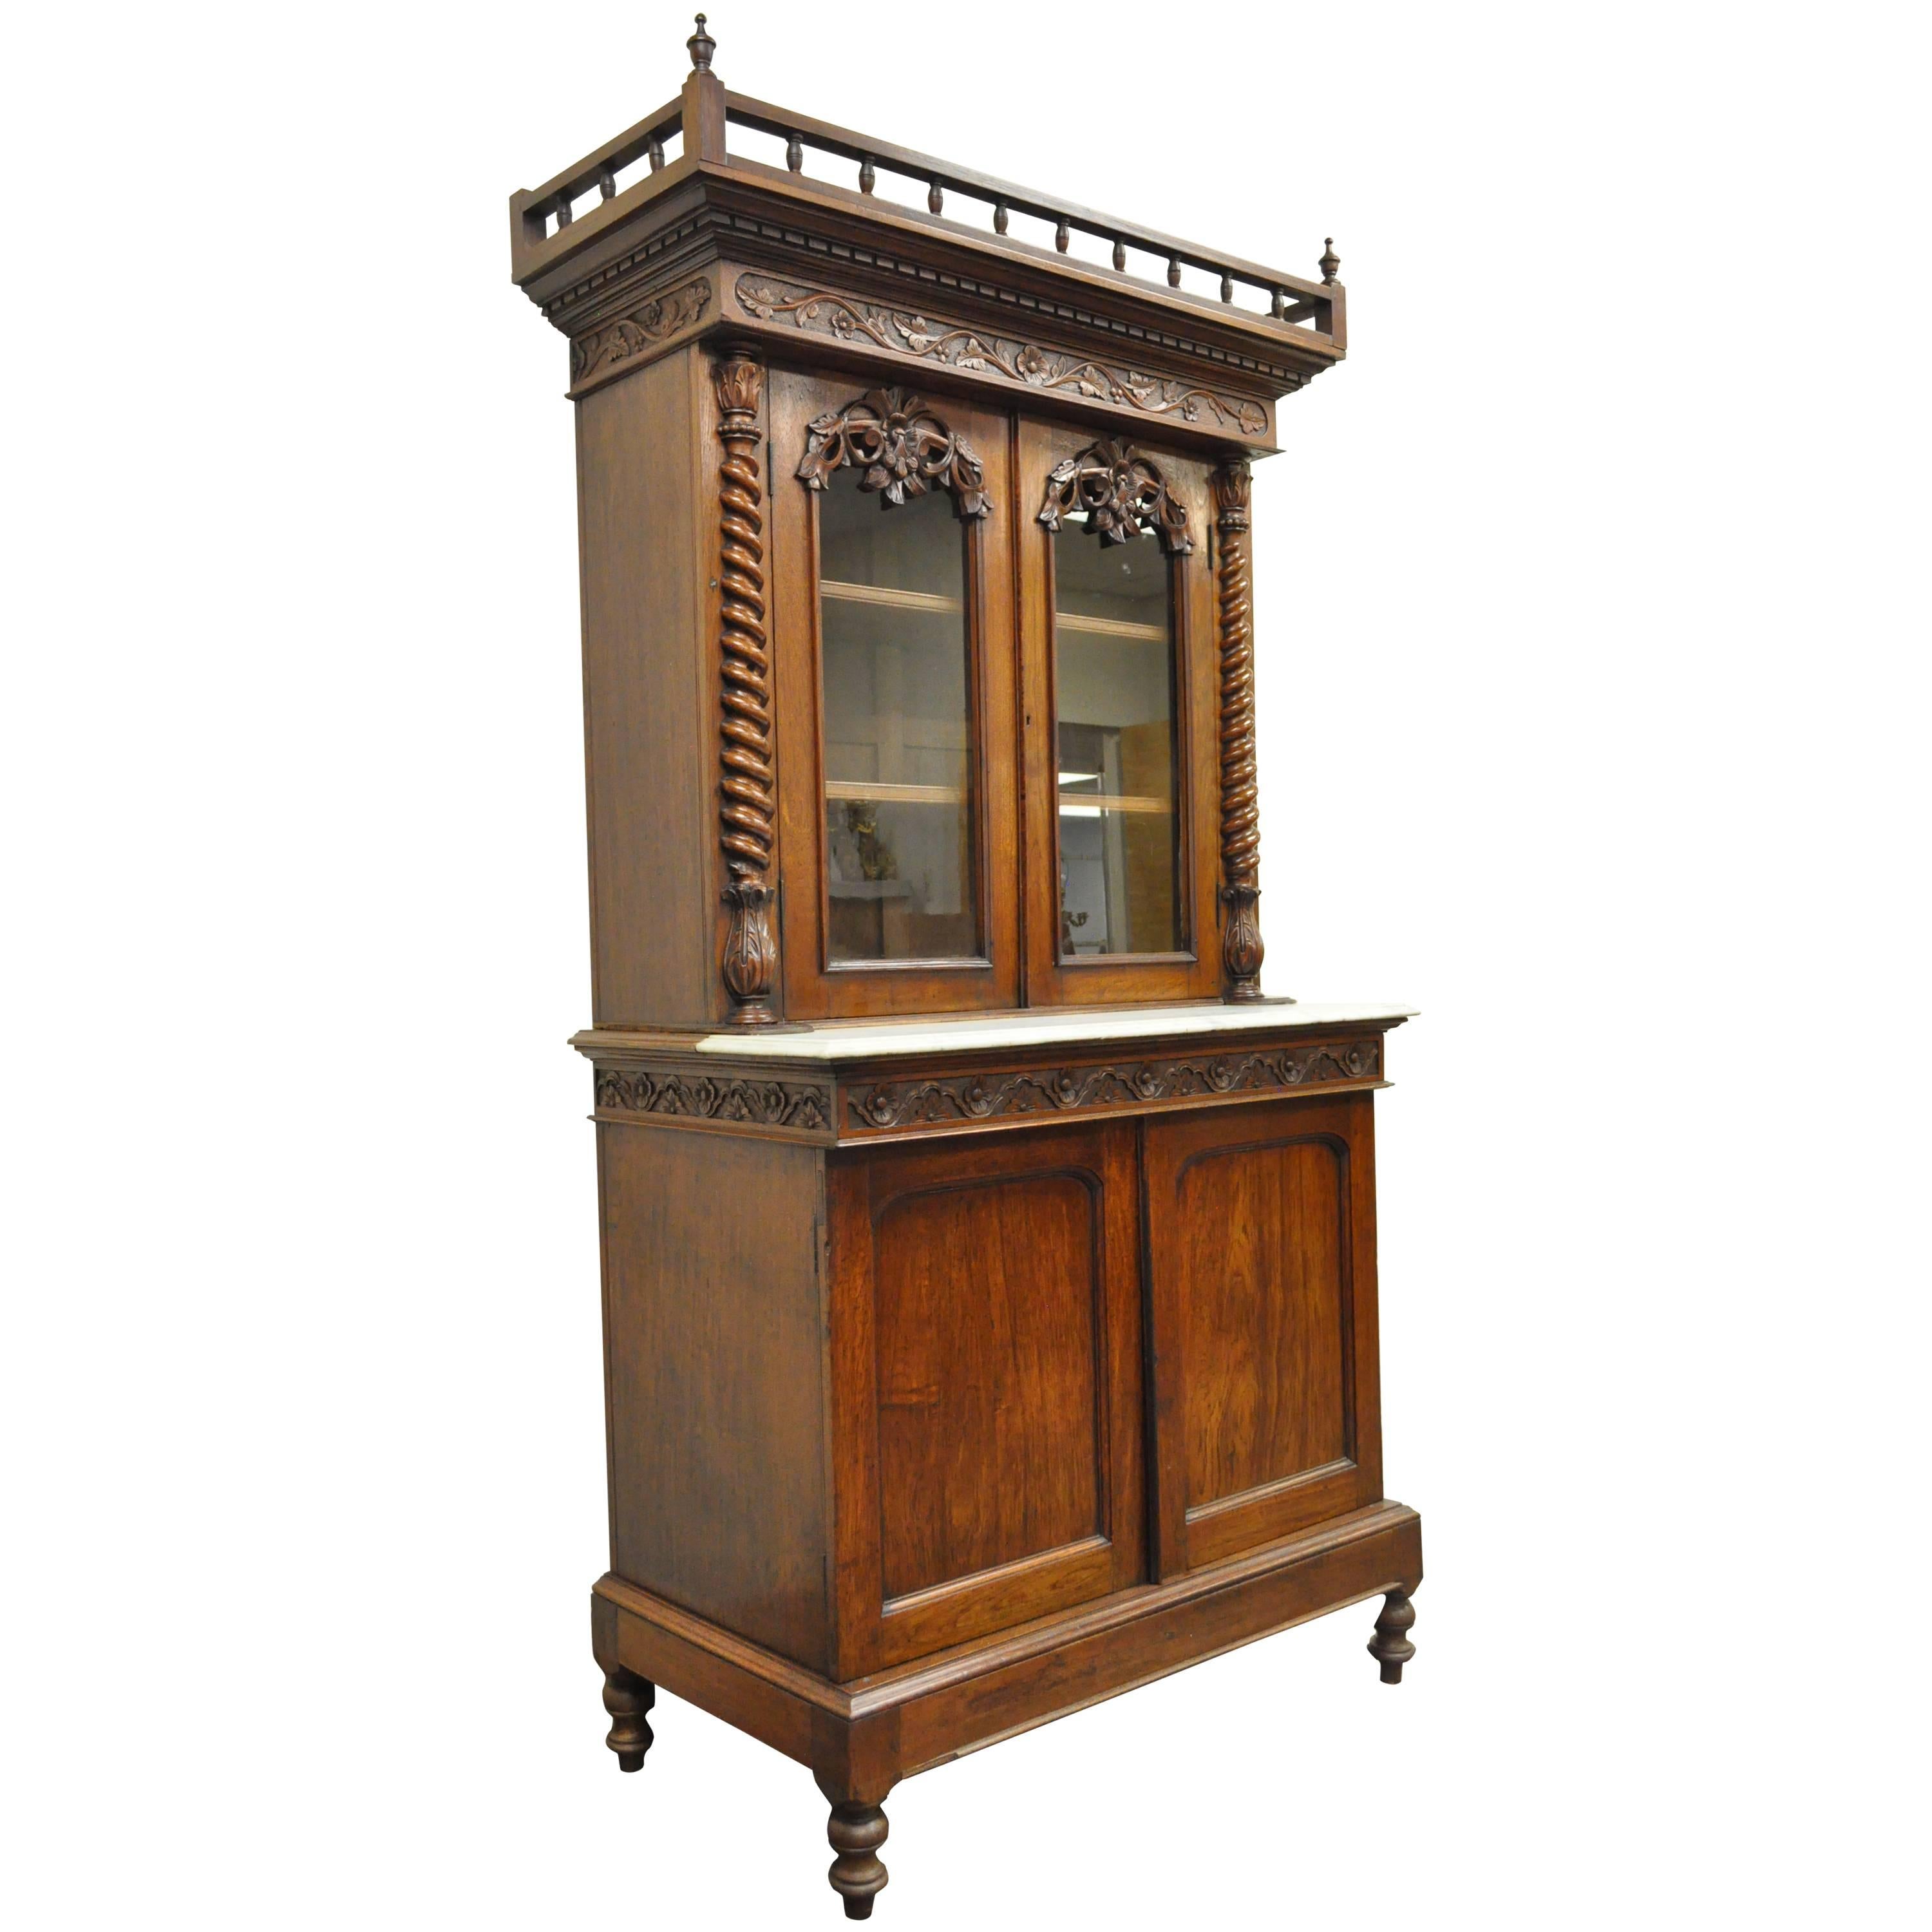 19. Jahrhundert French Renaissance Nussbaum Bücherregal Sideboard Buffet Hutch Cabinet